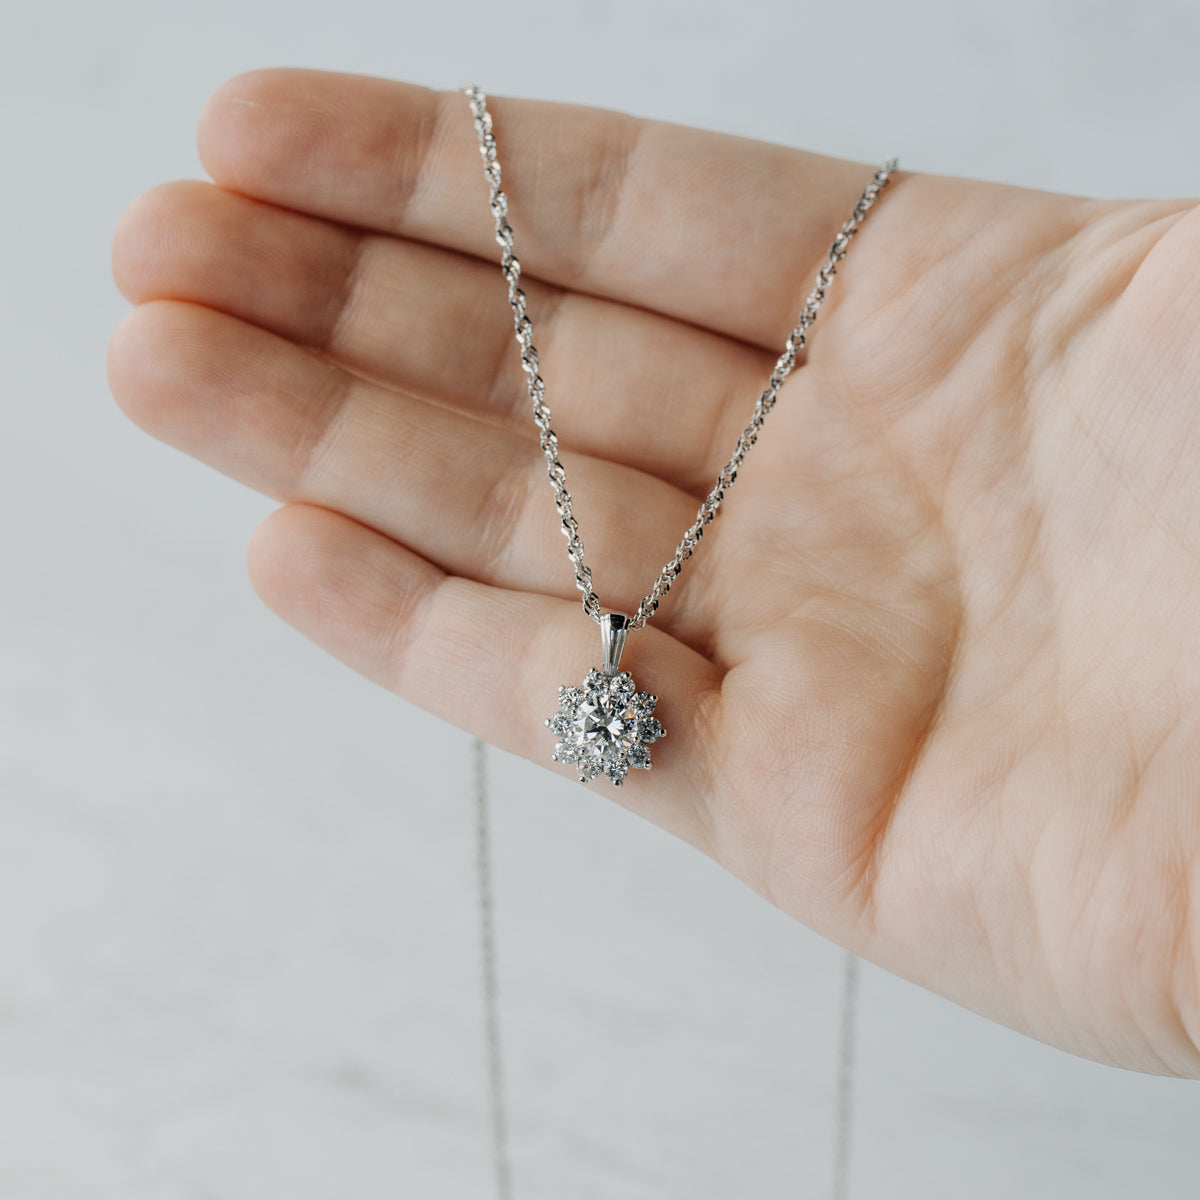 Buy Unique Cluster Diamond Necklace For Women | Branta - Banta – Brantashop